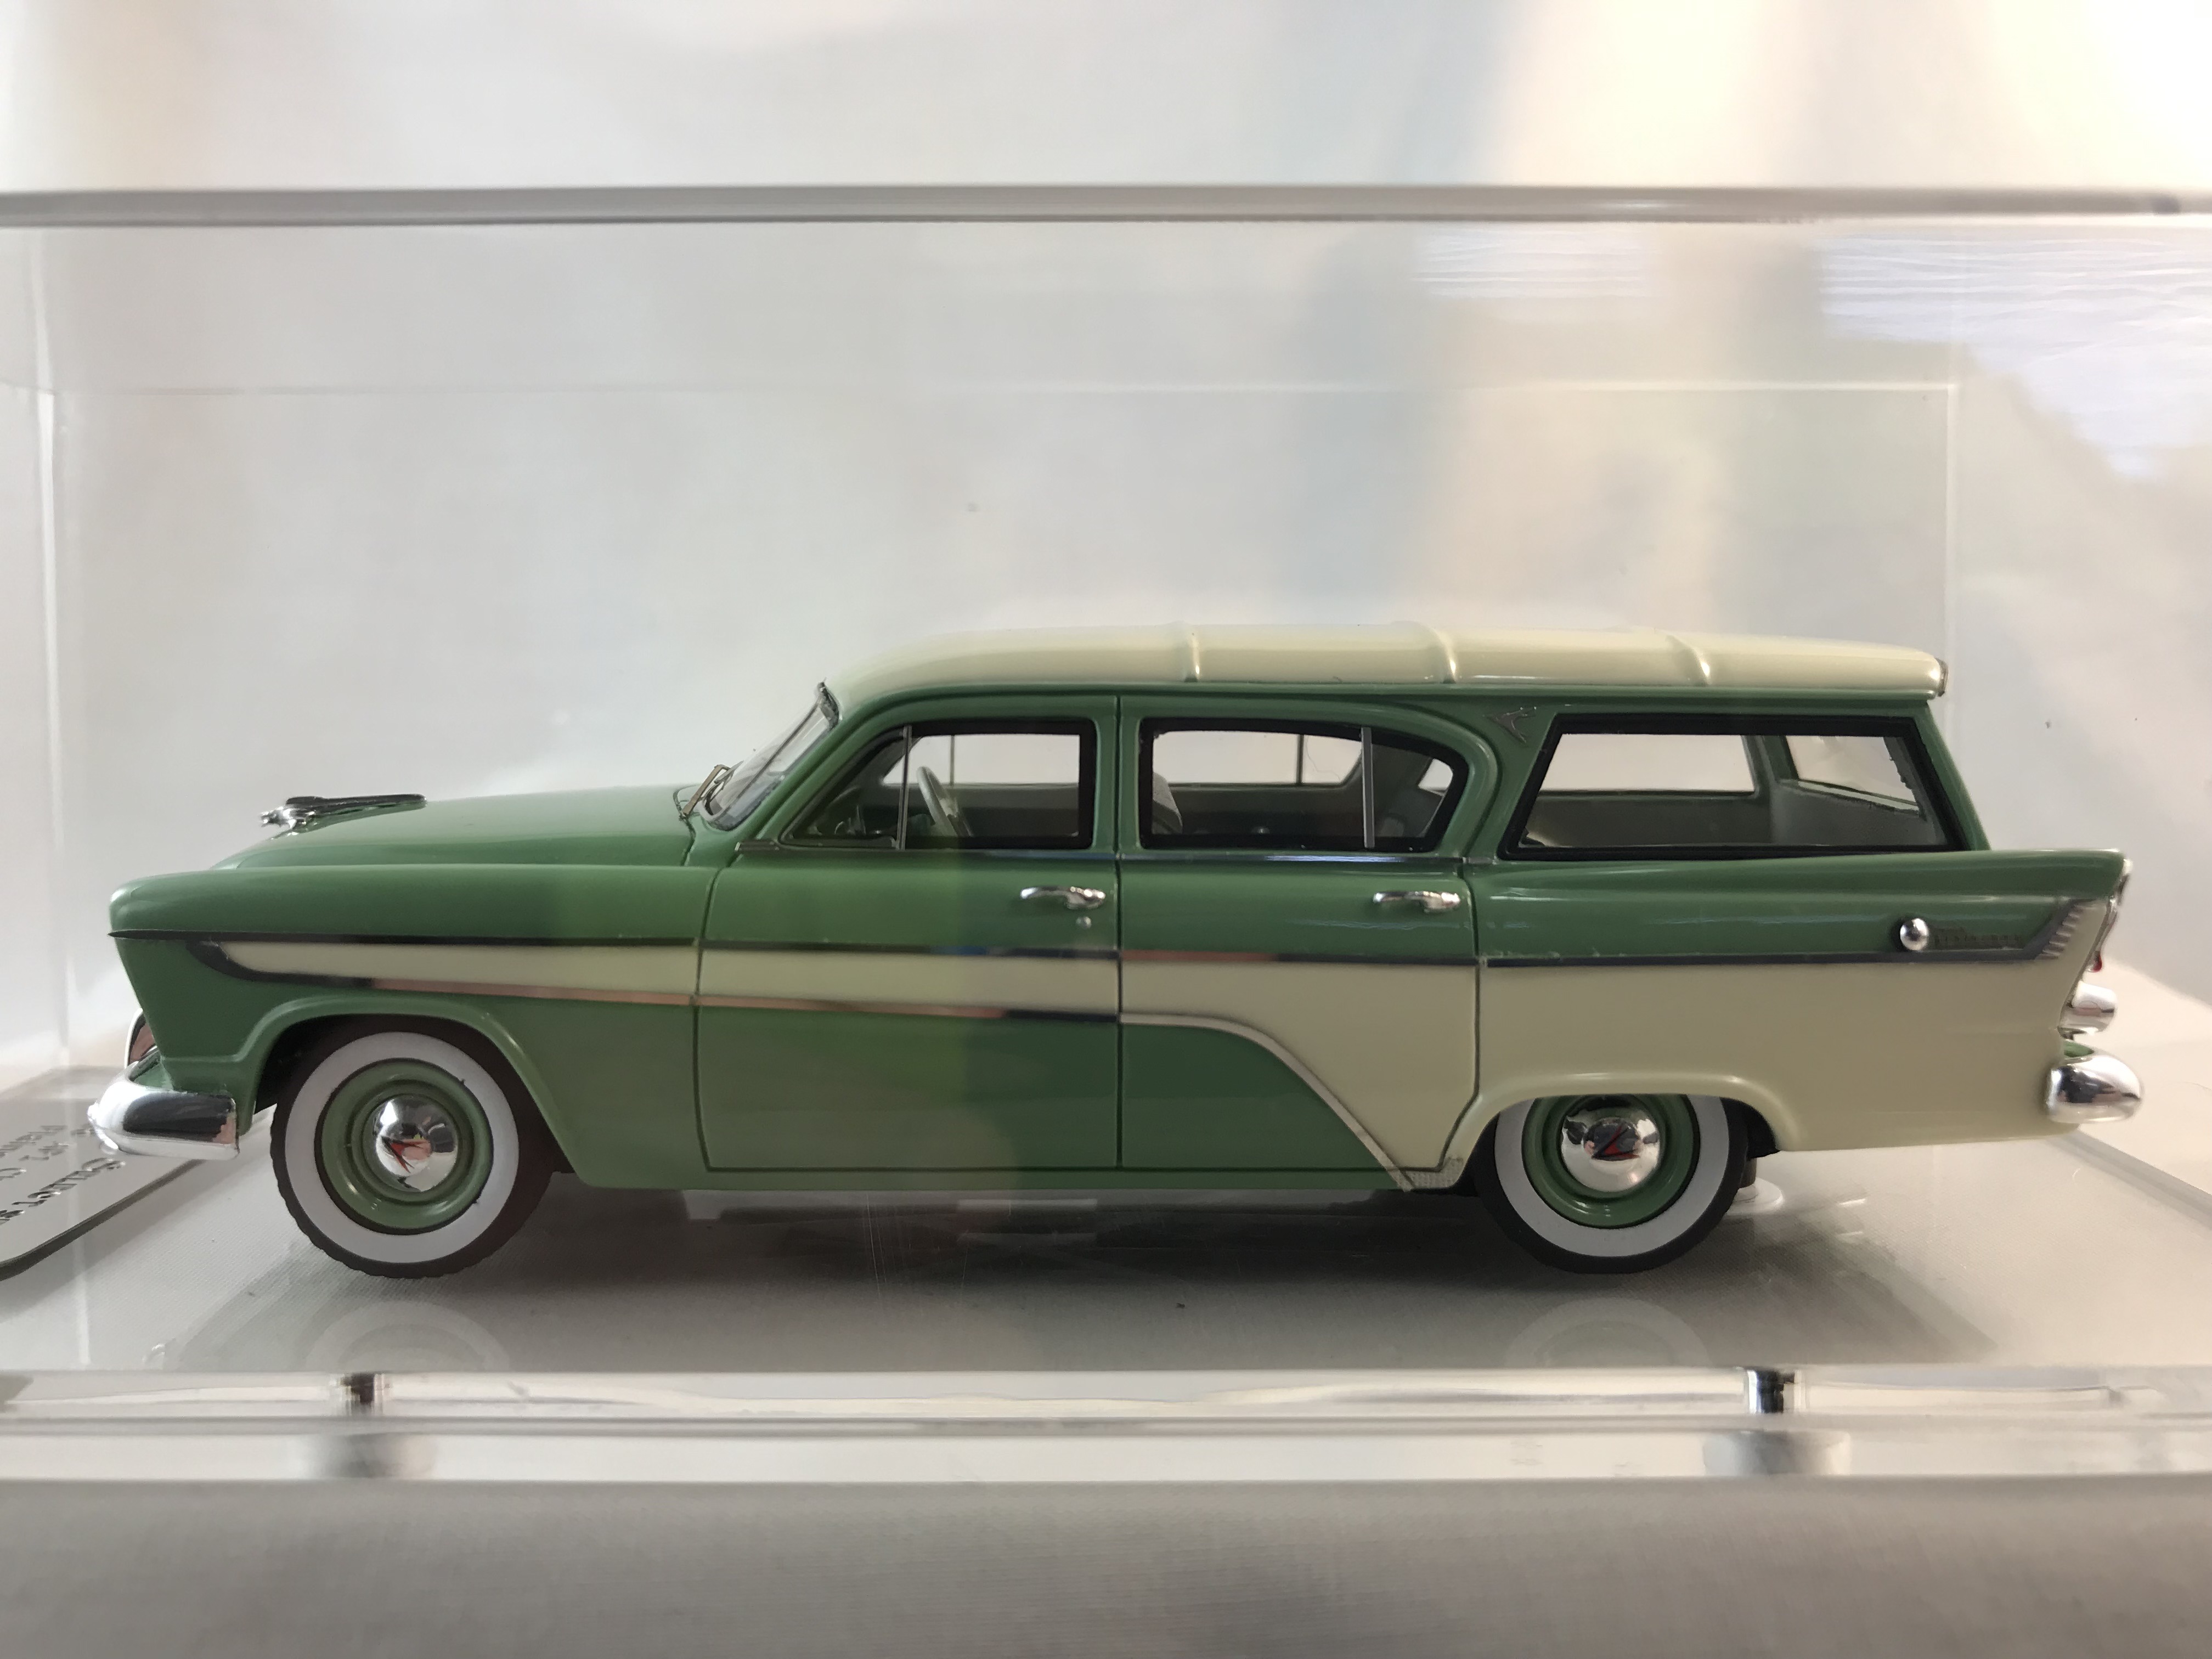 1958 AP1 Chrysler Royal Plainsman Station Wagon Green / White